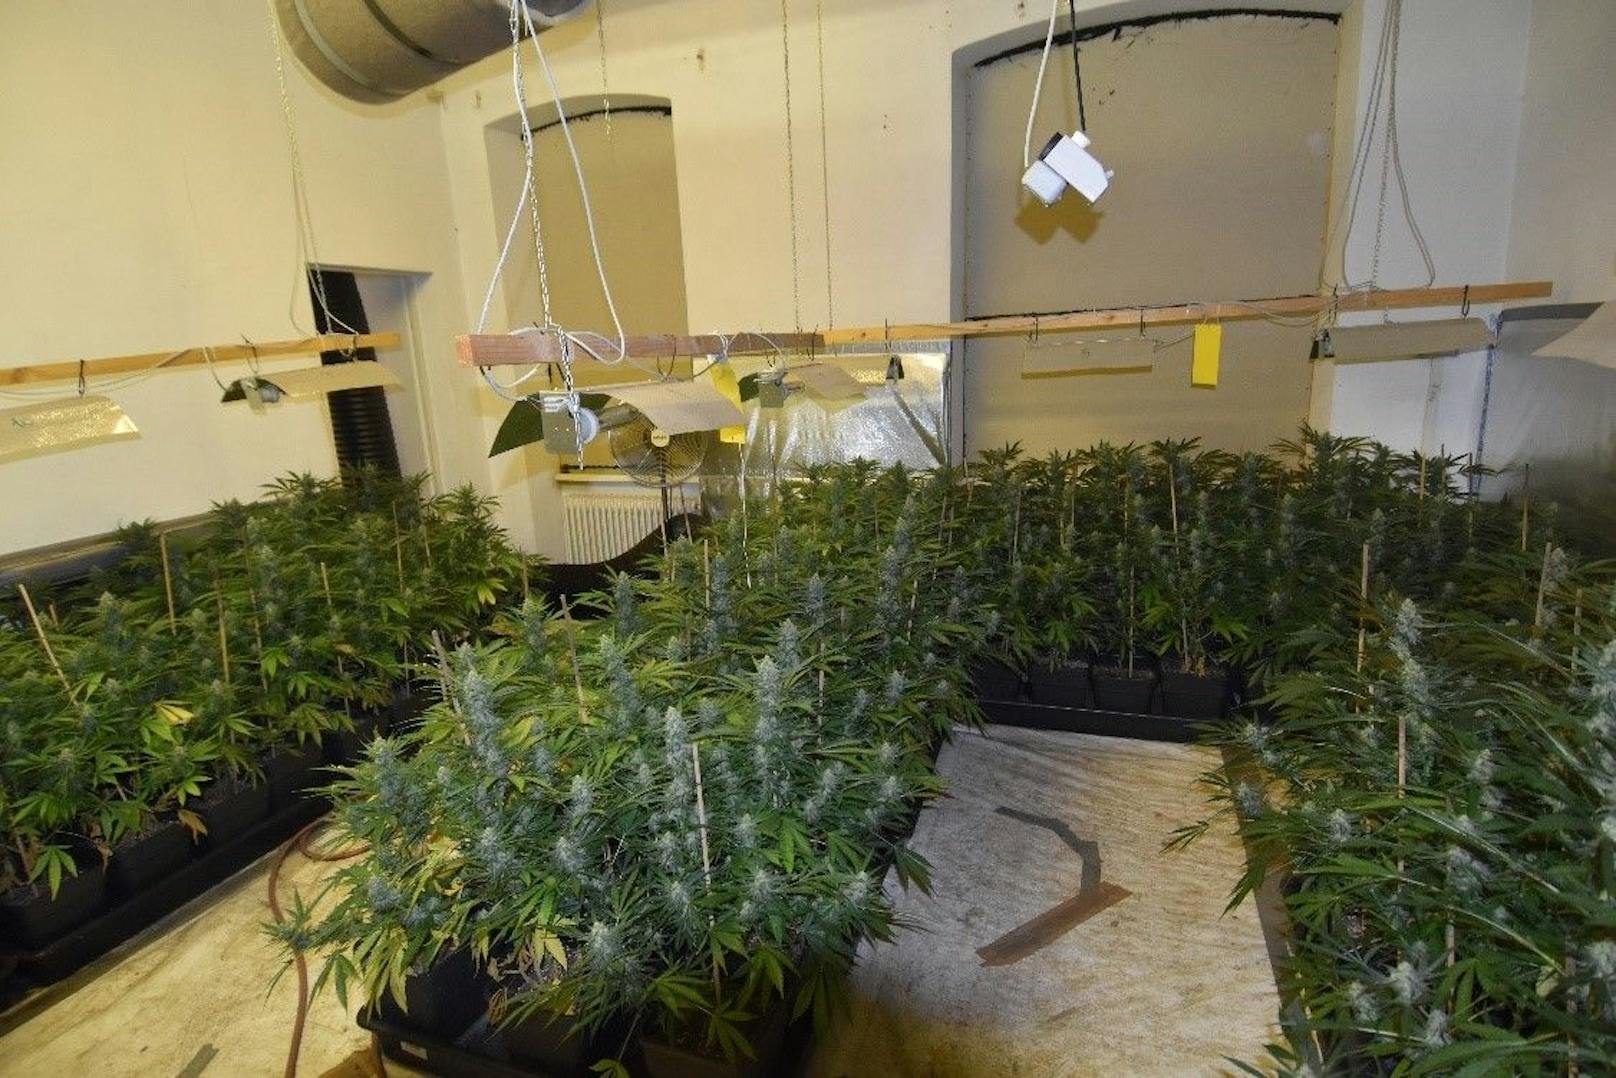 Die Beamten konnten in der Wohnung fast 80 Cannabispflanzen sicherstellen. Symbol- und Archivfoto